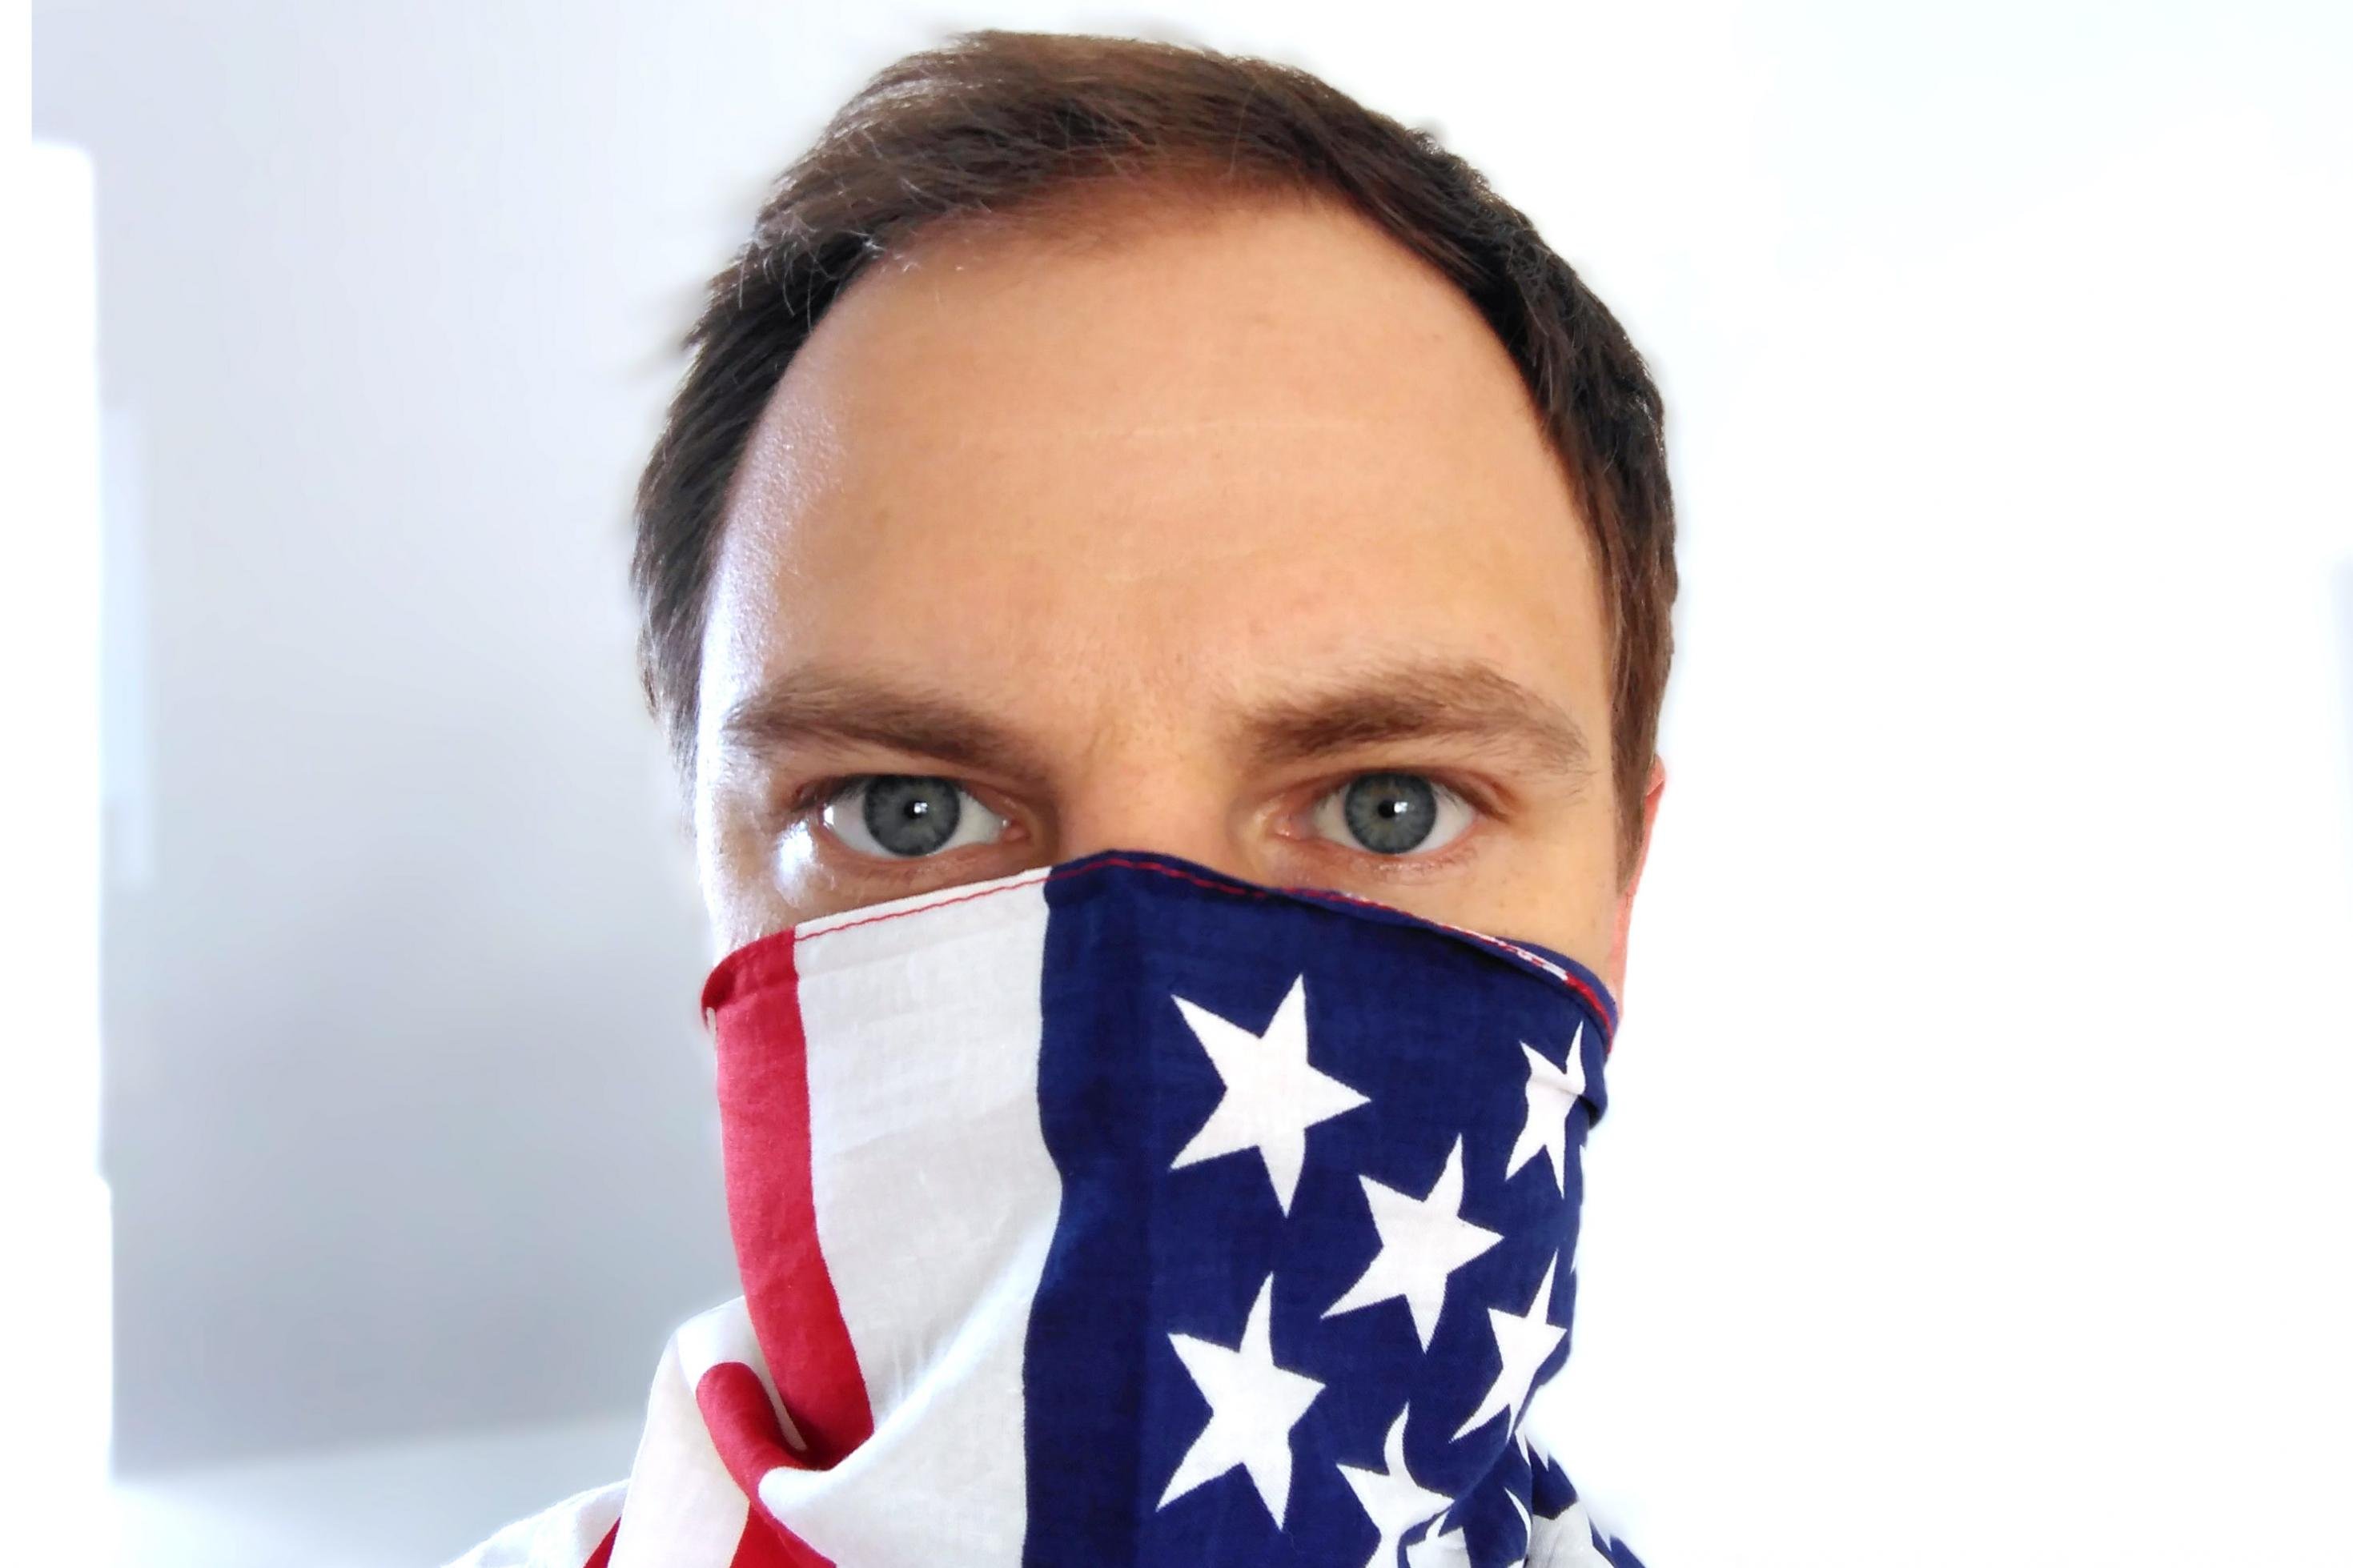 Nahaufnahme eines Gesichts, dessen Mund und Nase mit einer USA-Fahne bedeckt sind.